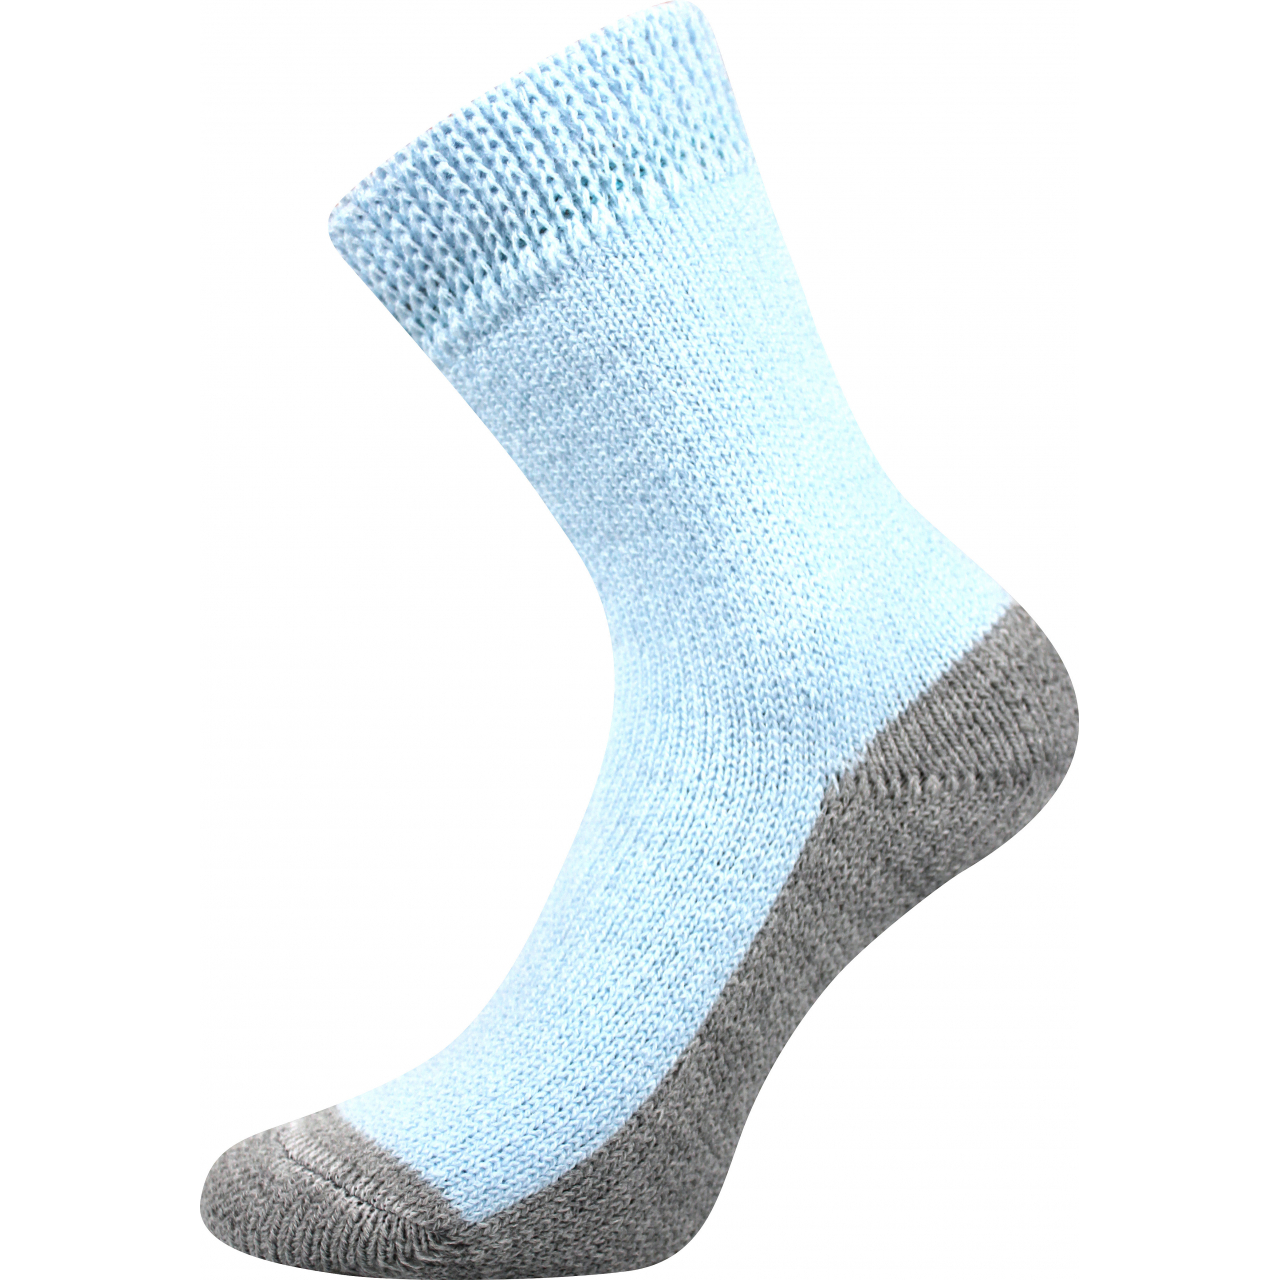 Ponožky unisex Boma Spací - světle modré, 43-46